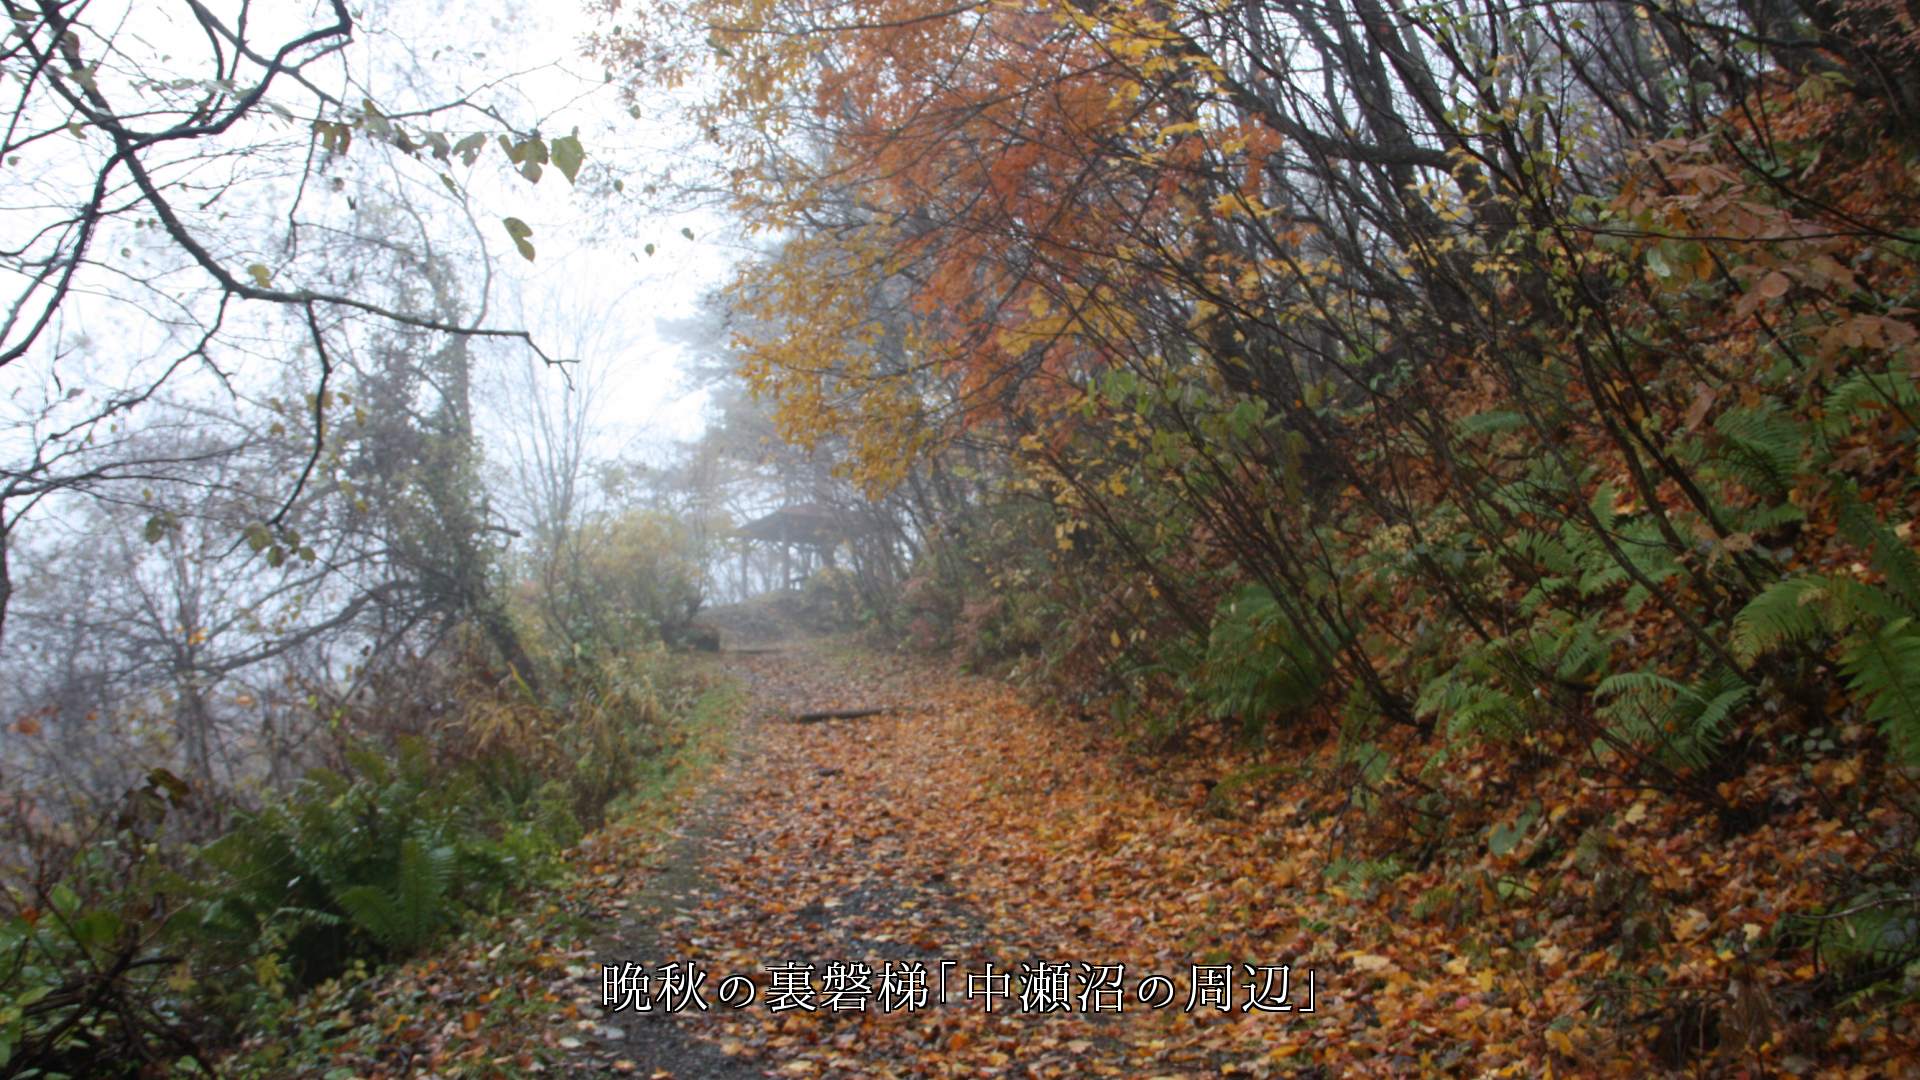 落ち葉が積もった散策路　秋の風情が包み　歩く人々の足音もサクサクと・・・